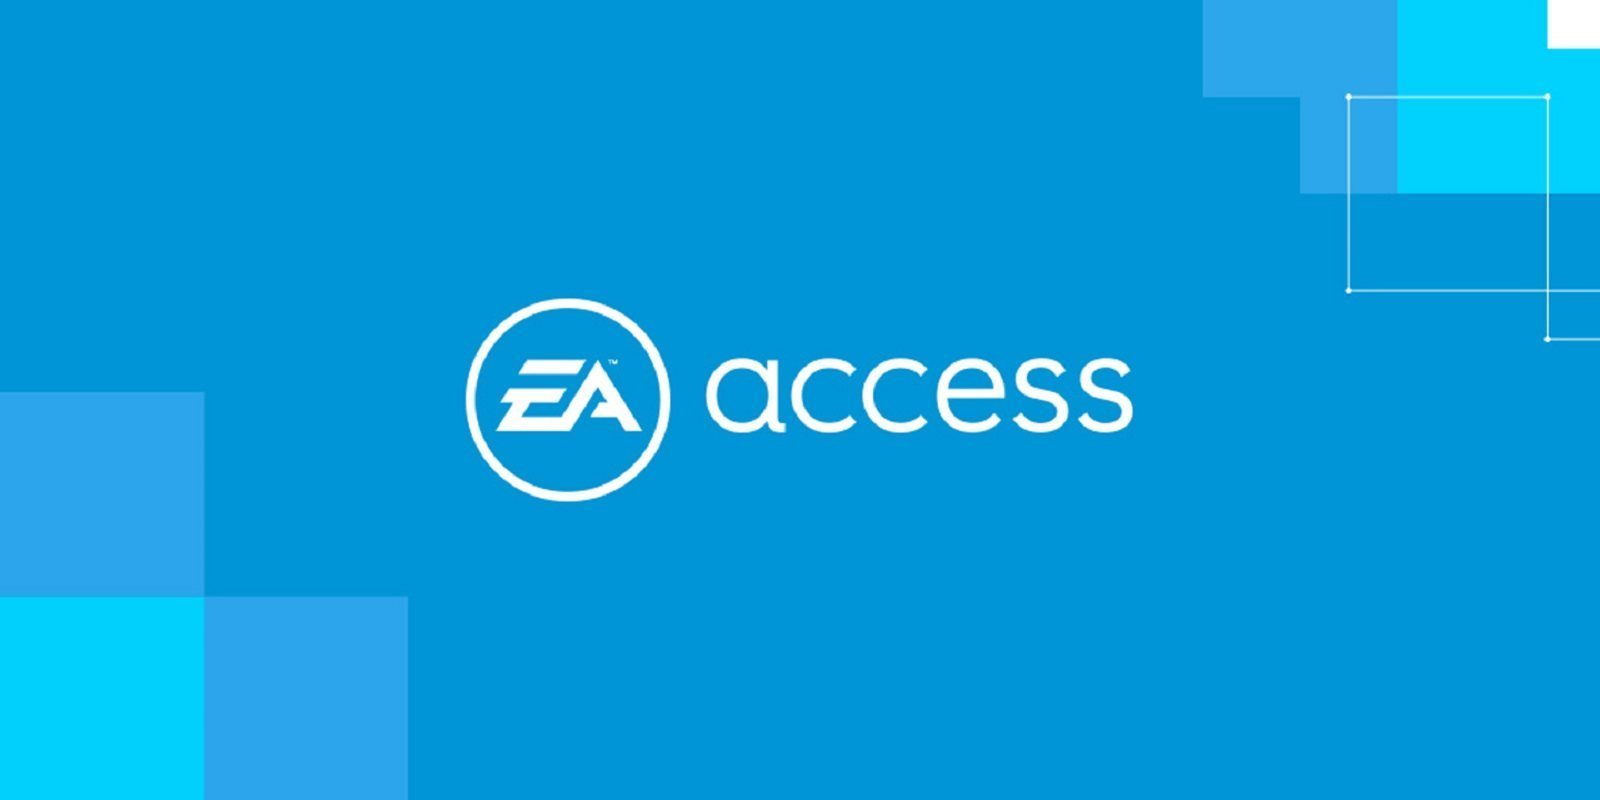 E3 2019: Electronic Arts confirma que EA Access llegará a PS4 en julio